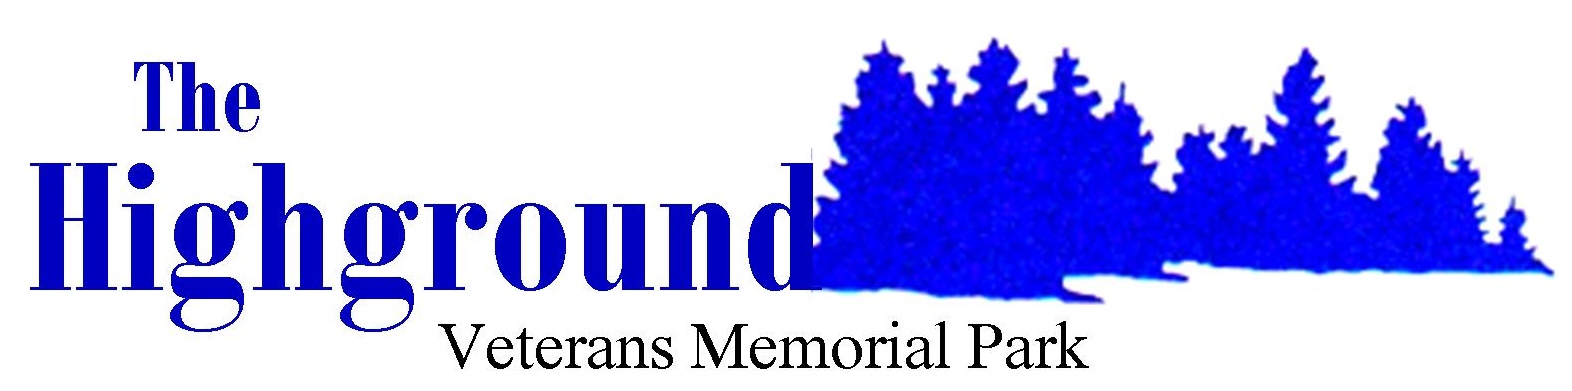 The Highground Veterans Memorial Park logo